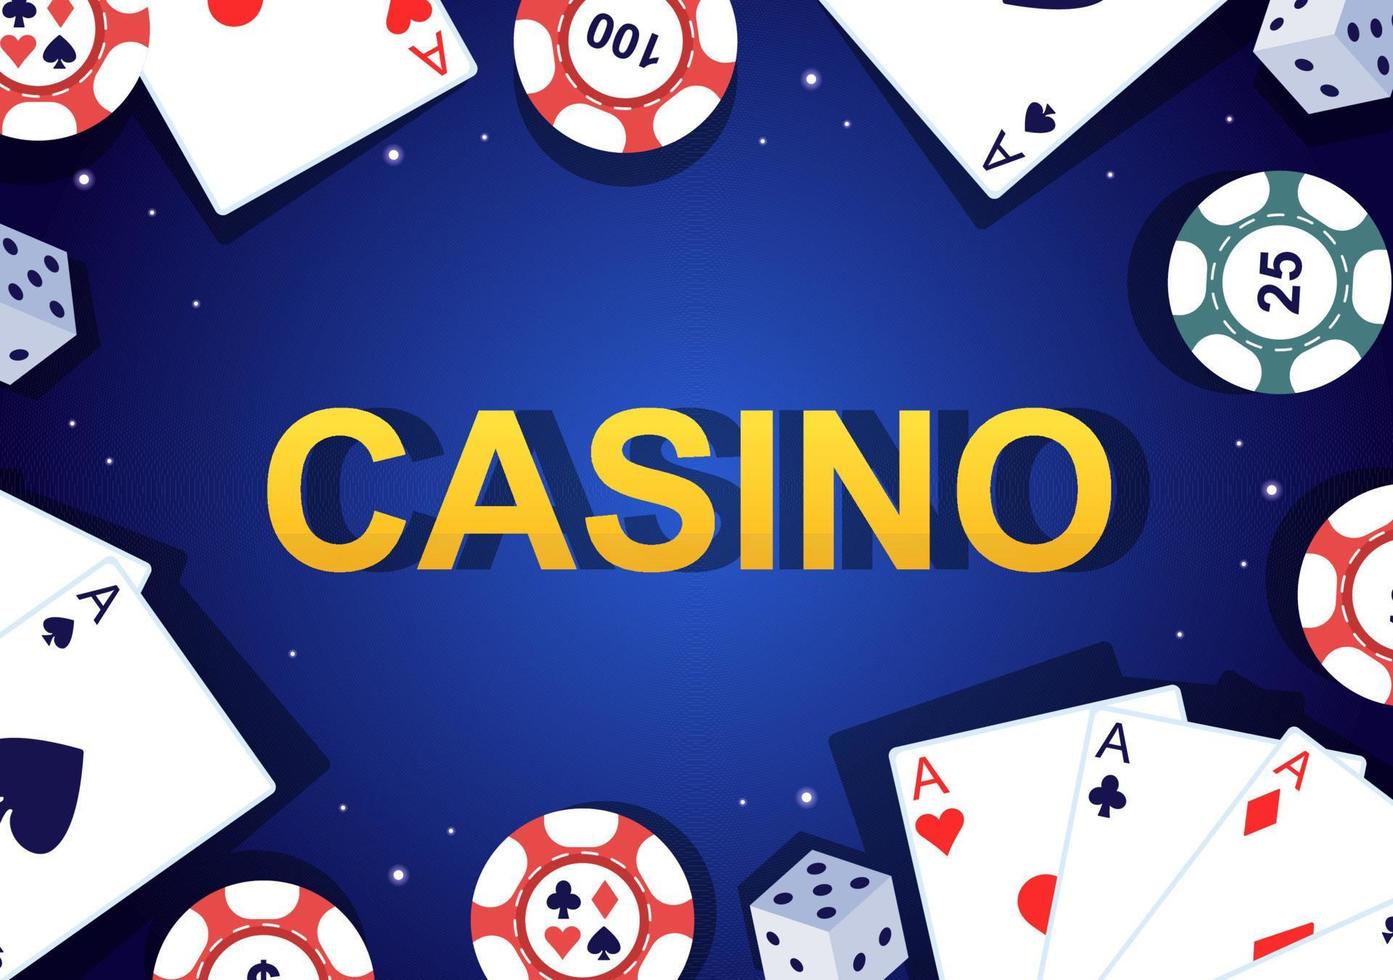 casino-cartoon-illustration mit knöpfen, spielautomat, roulette, pokerchips und spielkarten für das design im spielstil vektor